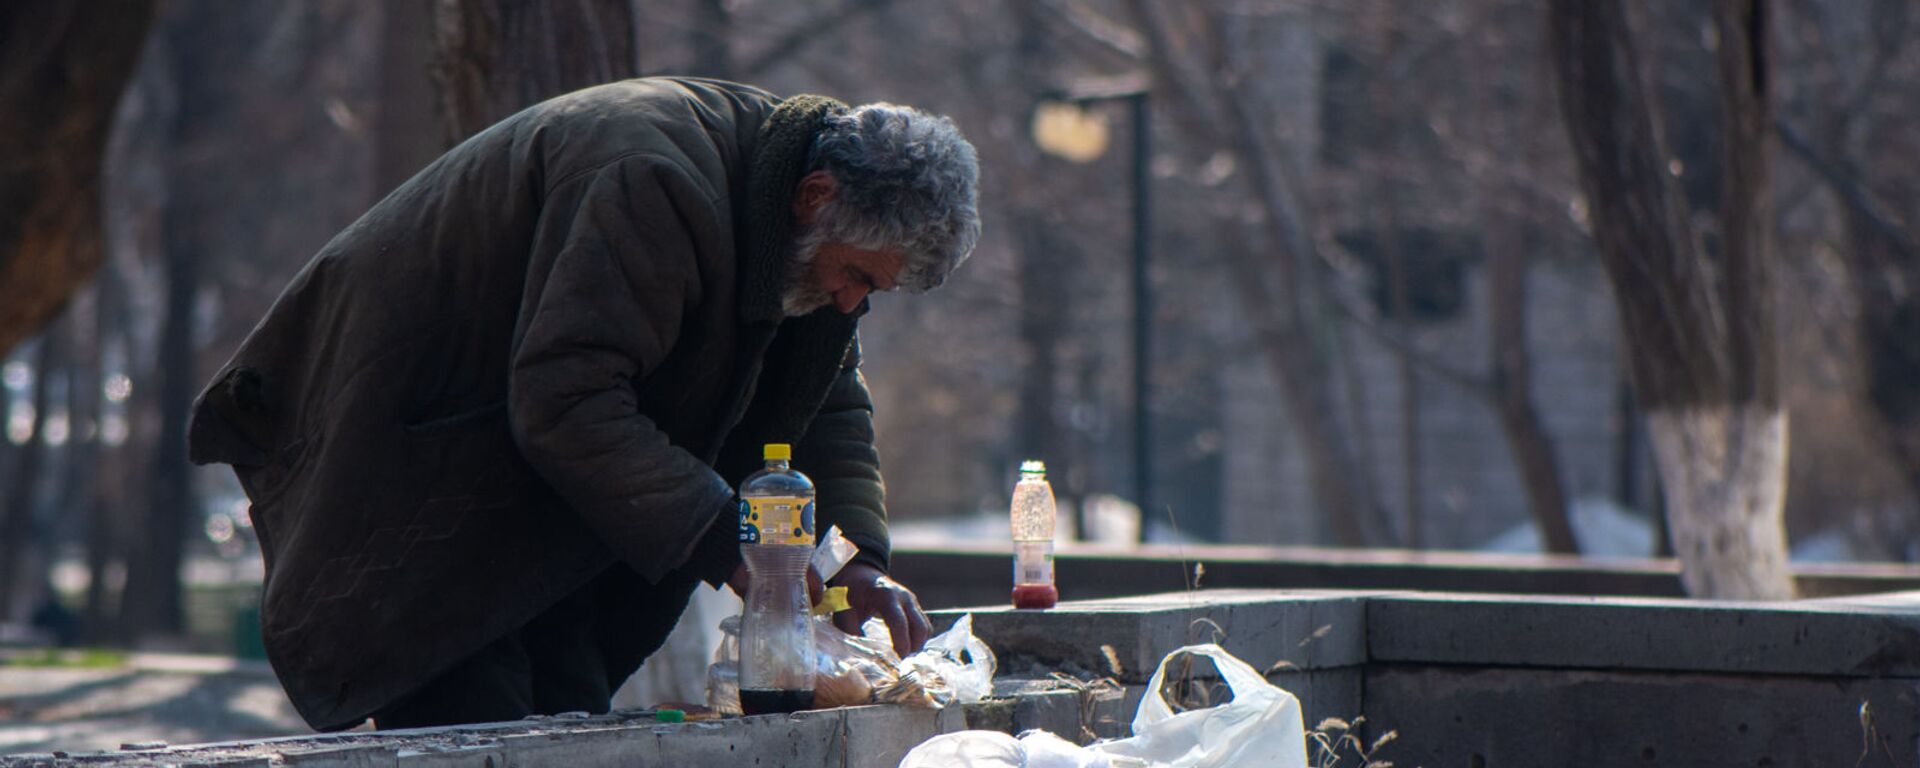 Бездомный мужчина обедает в городском парке - Sputnik Արմենիա, 1920, 06.12.2021